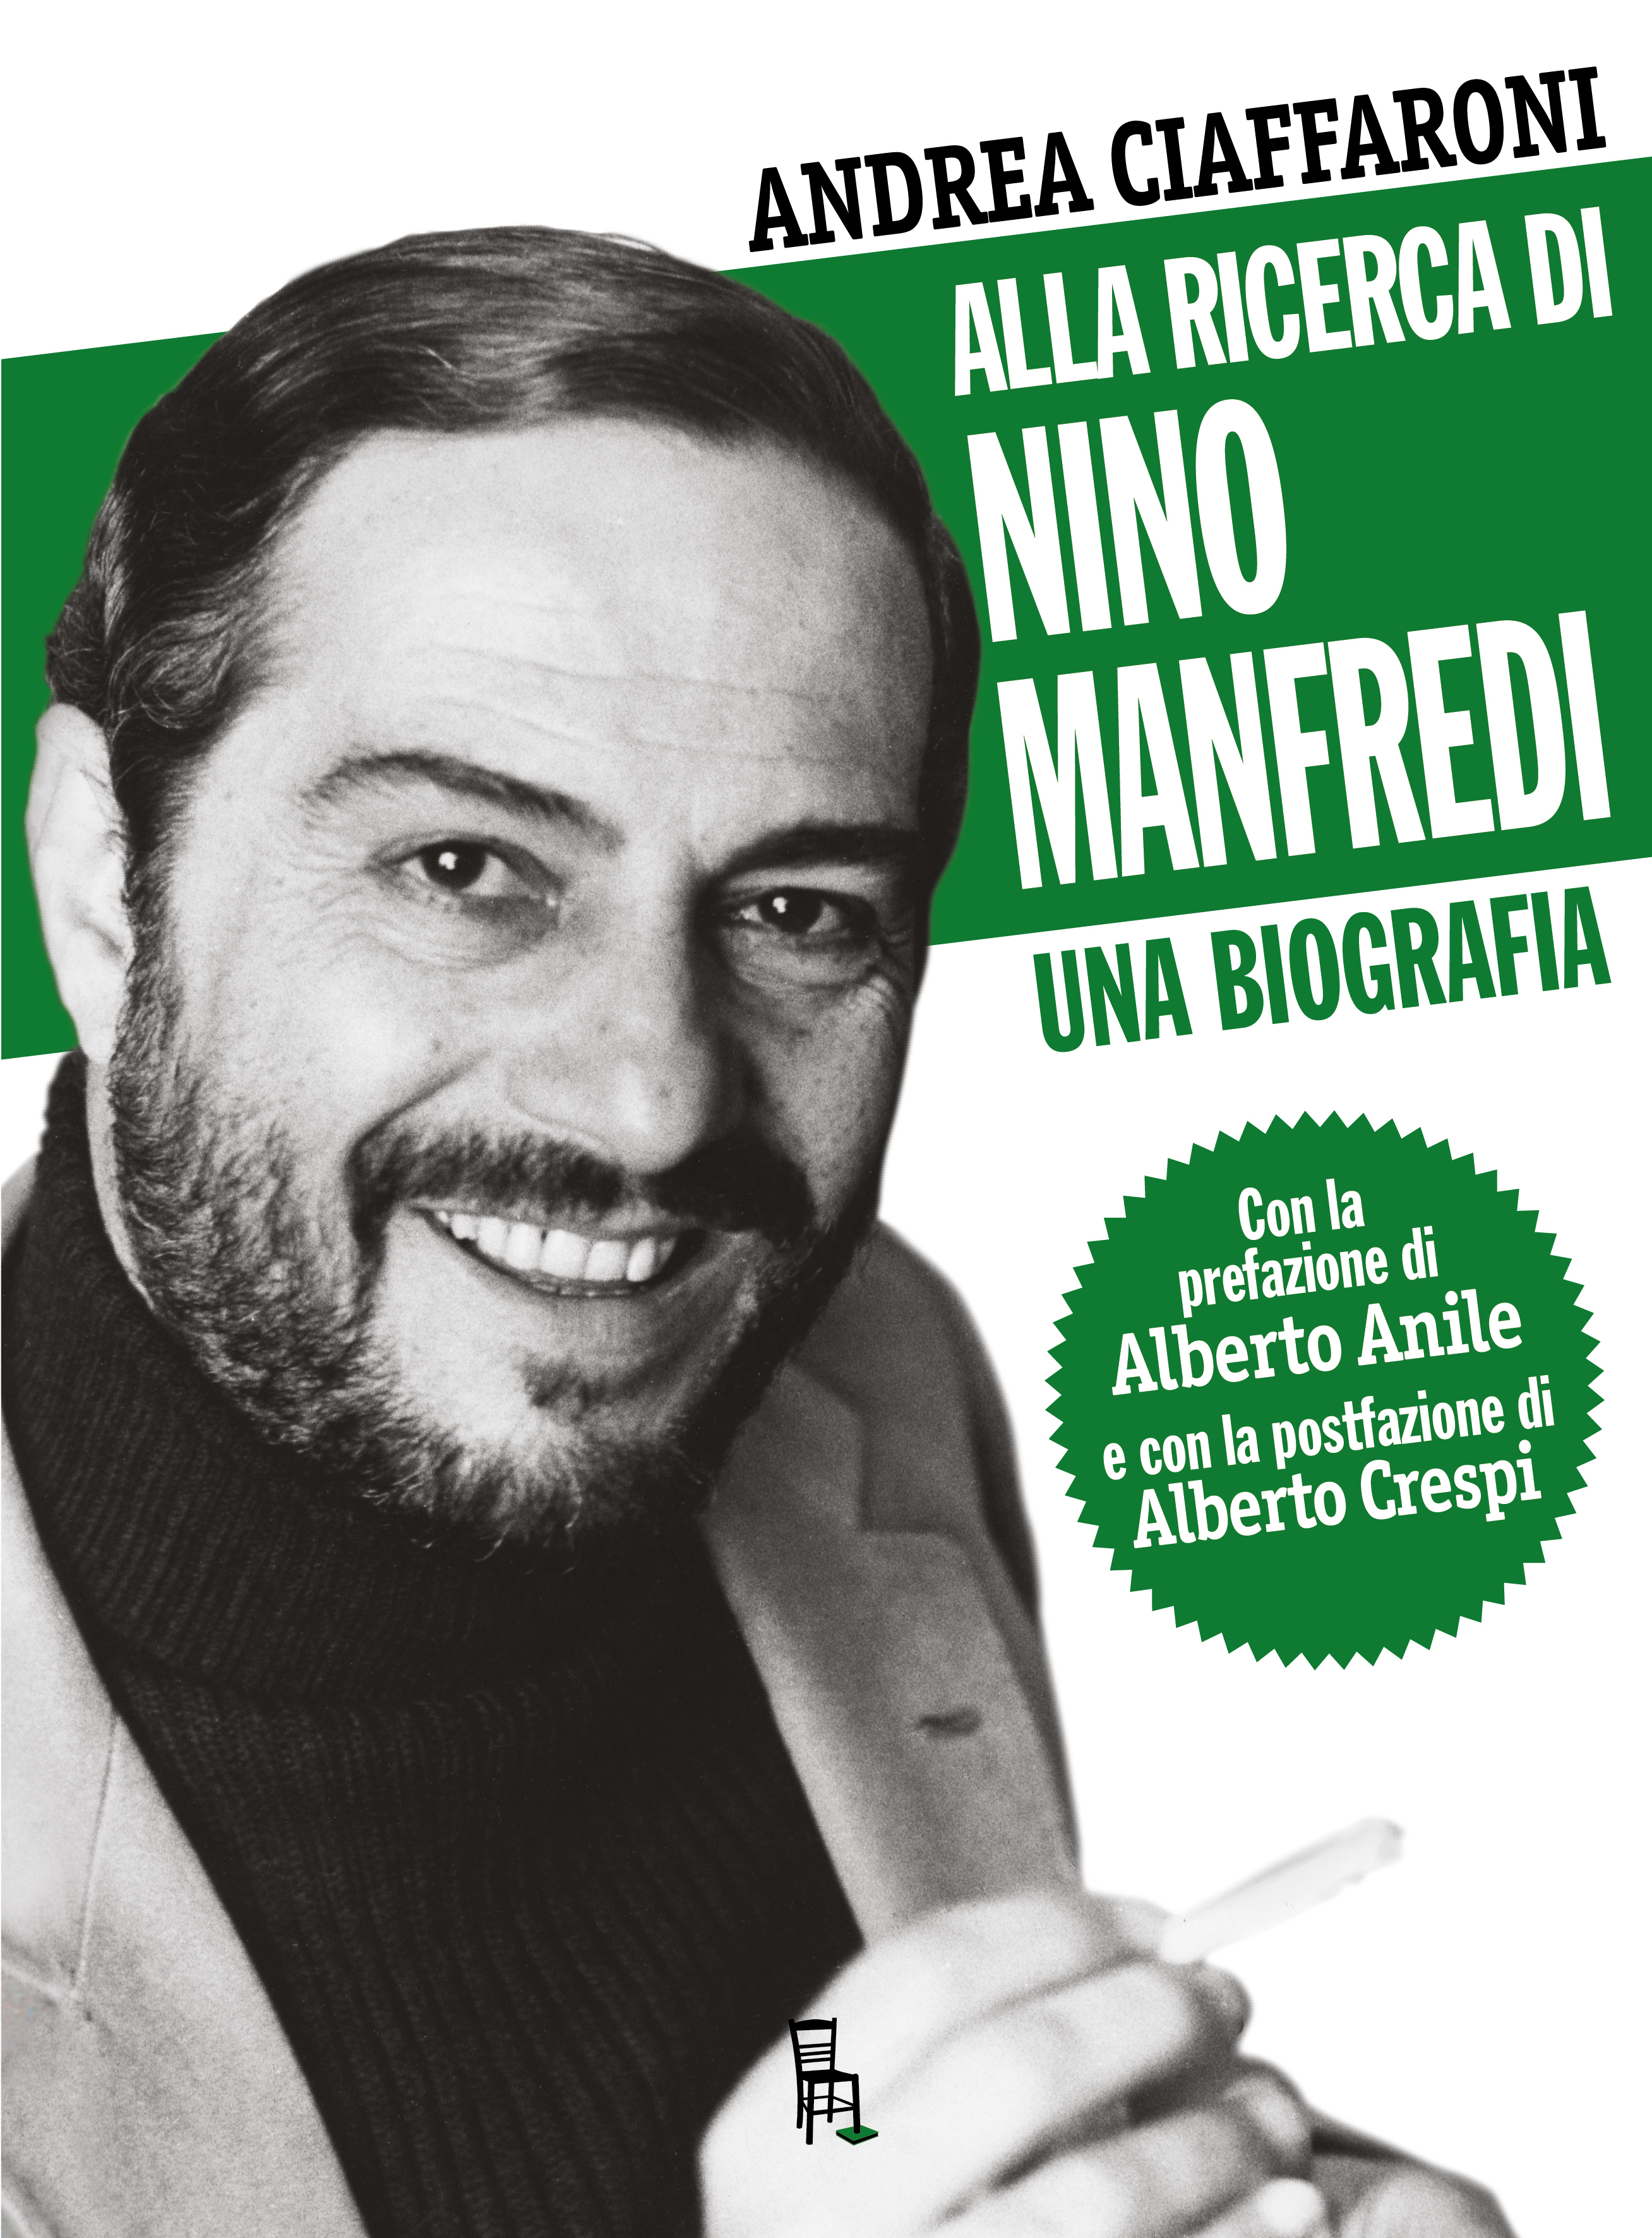 Andrea Ciaffaroni presenta la biografia “Alla ricerca di Nino Manfredi”